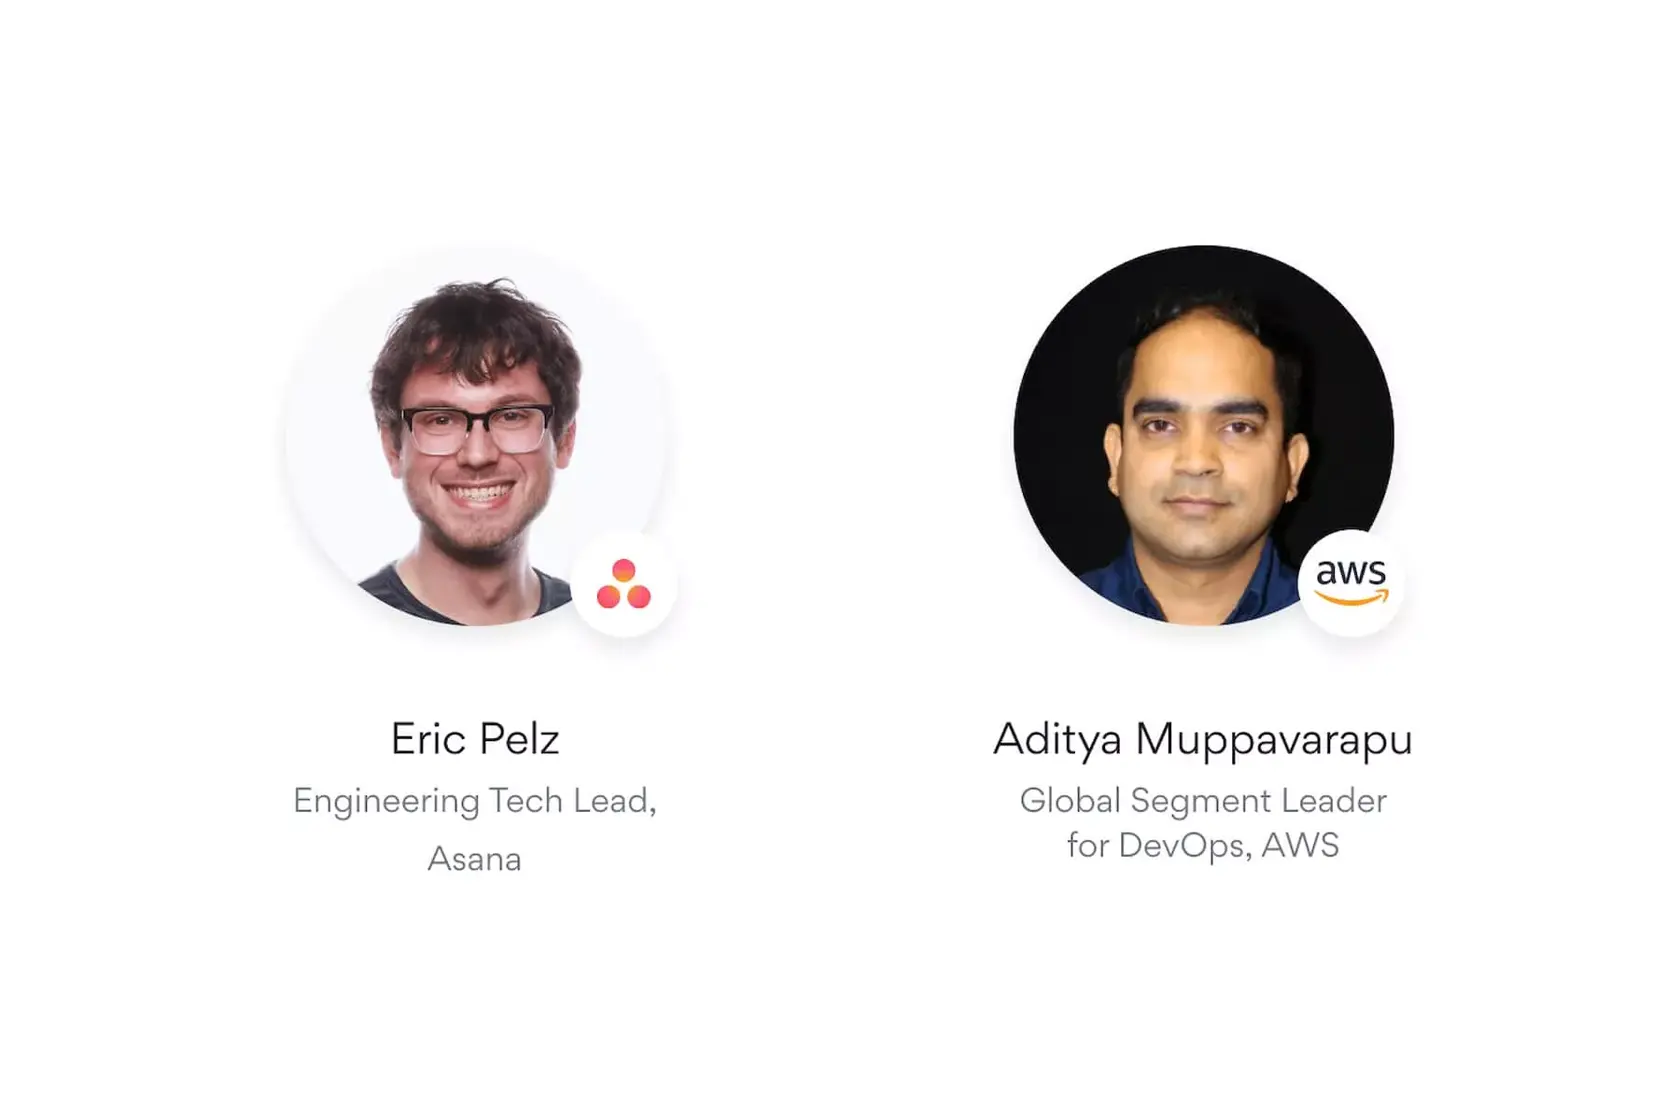 製品化までの時間を短縮: AWS と Asana によるトークコラボレーション。Asana でエンジニアリングリーダーを務める Eric Pelz と AWS で DevOps のグローバルセグメントリーダーを務める Aditya Muppavarapu 氏の対談を紹介します。